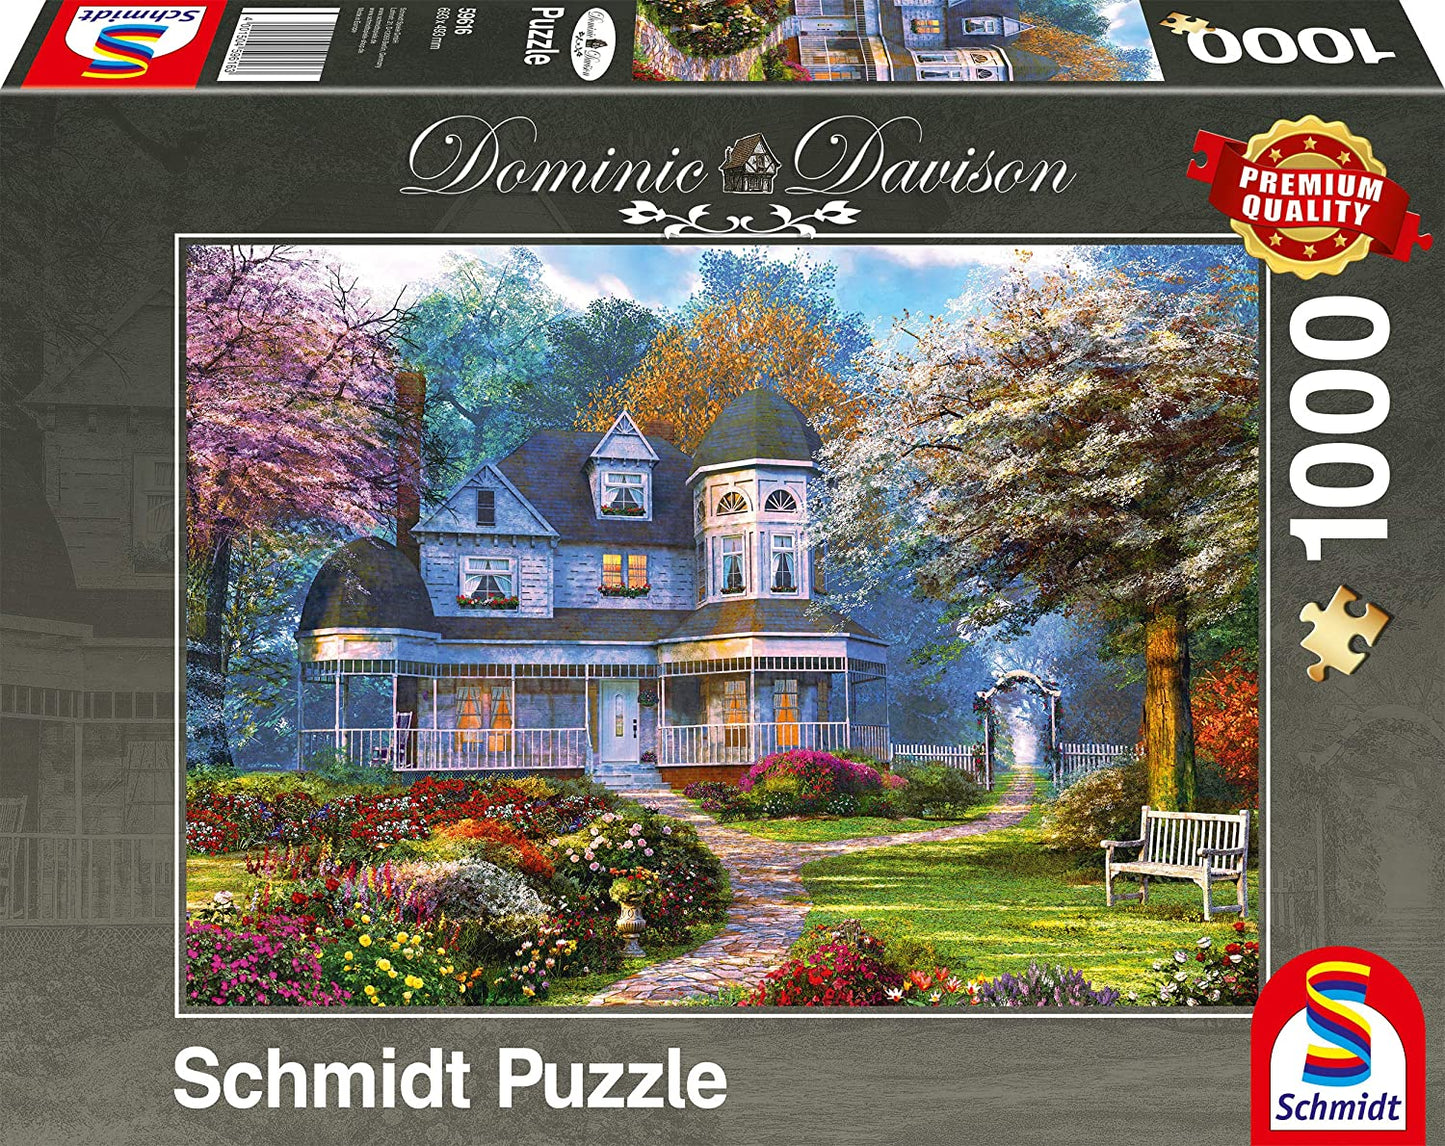 Schmidt - Dominic Davison - Victorian Mansion - 1000 Piece Jigsaw Puzzle